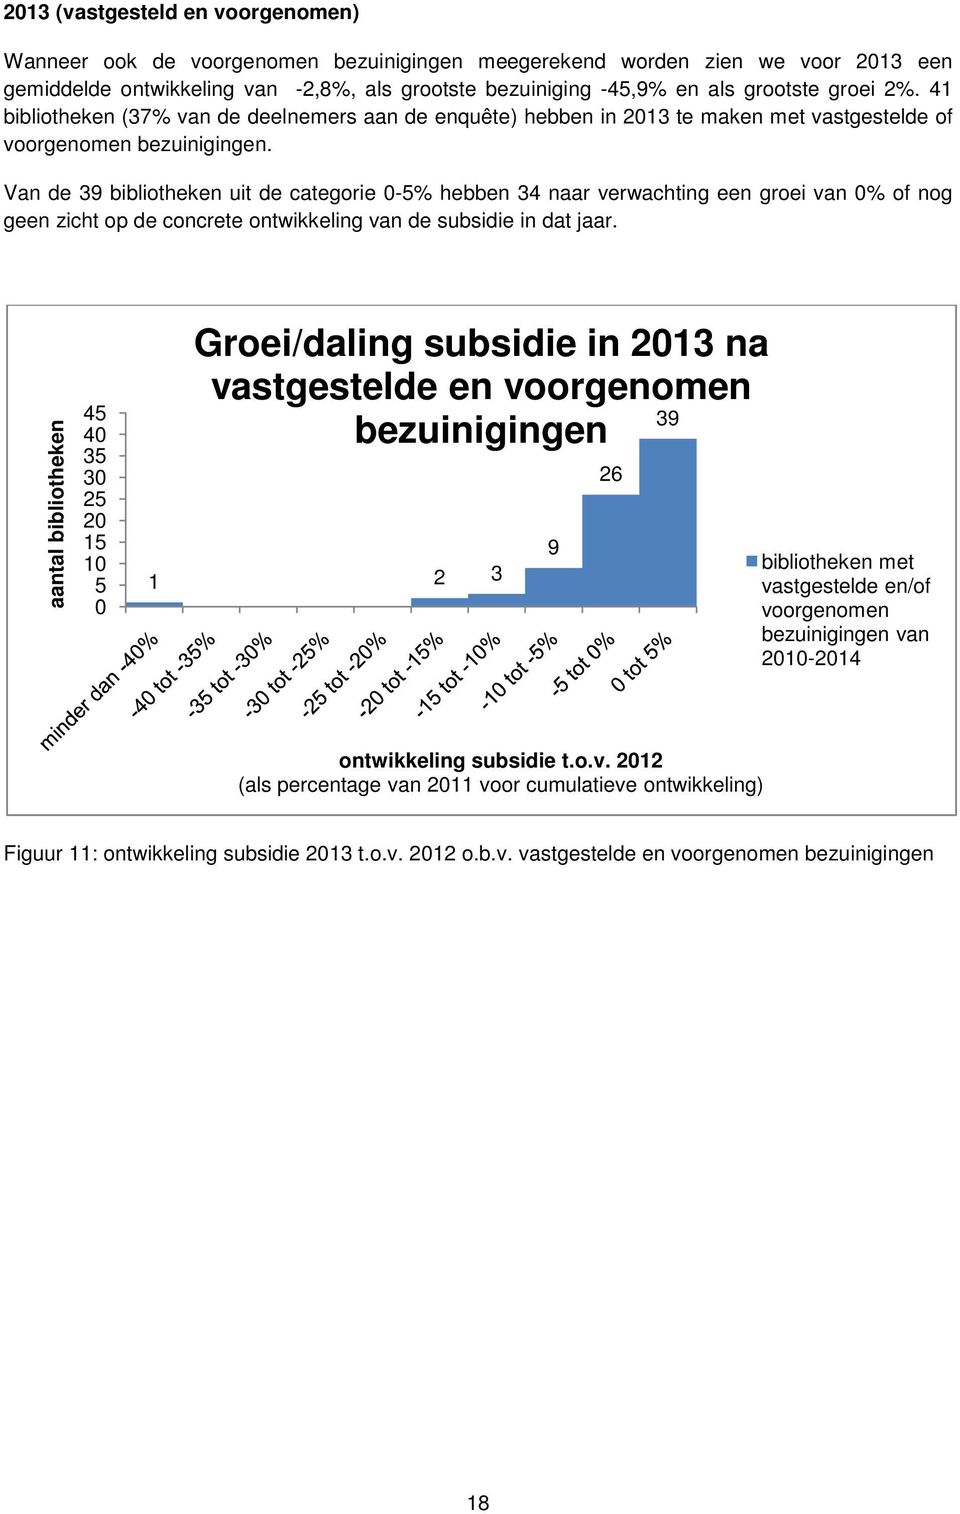 Van de 39 bibliotheken uit de categorie 0-5% hebben 34 naar verwachting een groei van 0% of nog geen zicht op de concrete ontwikkeling van de subsidie in dat jaar.